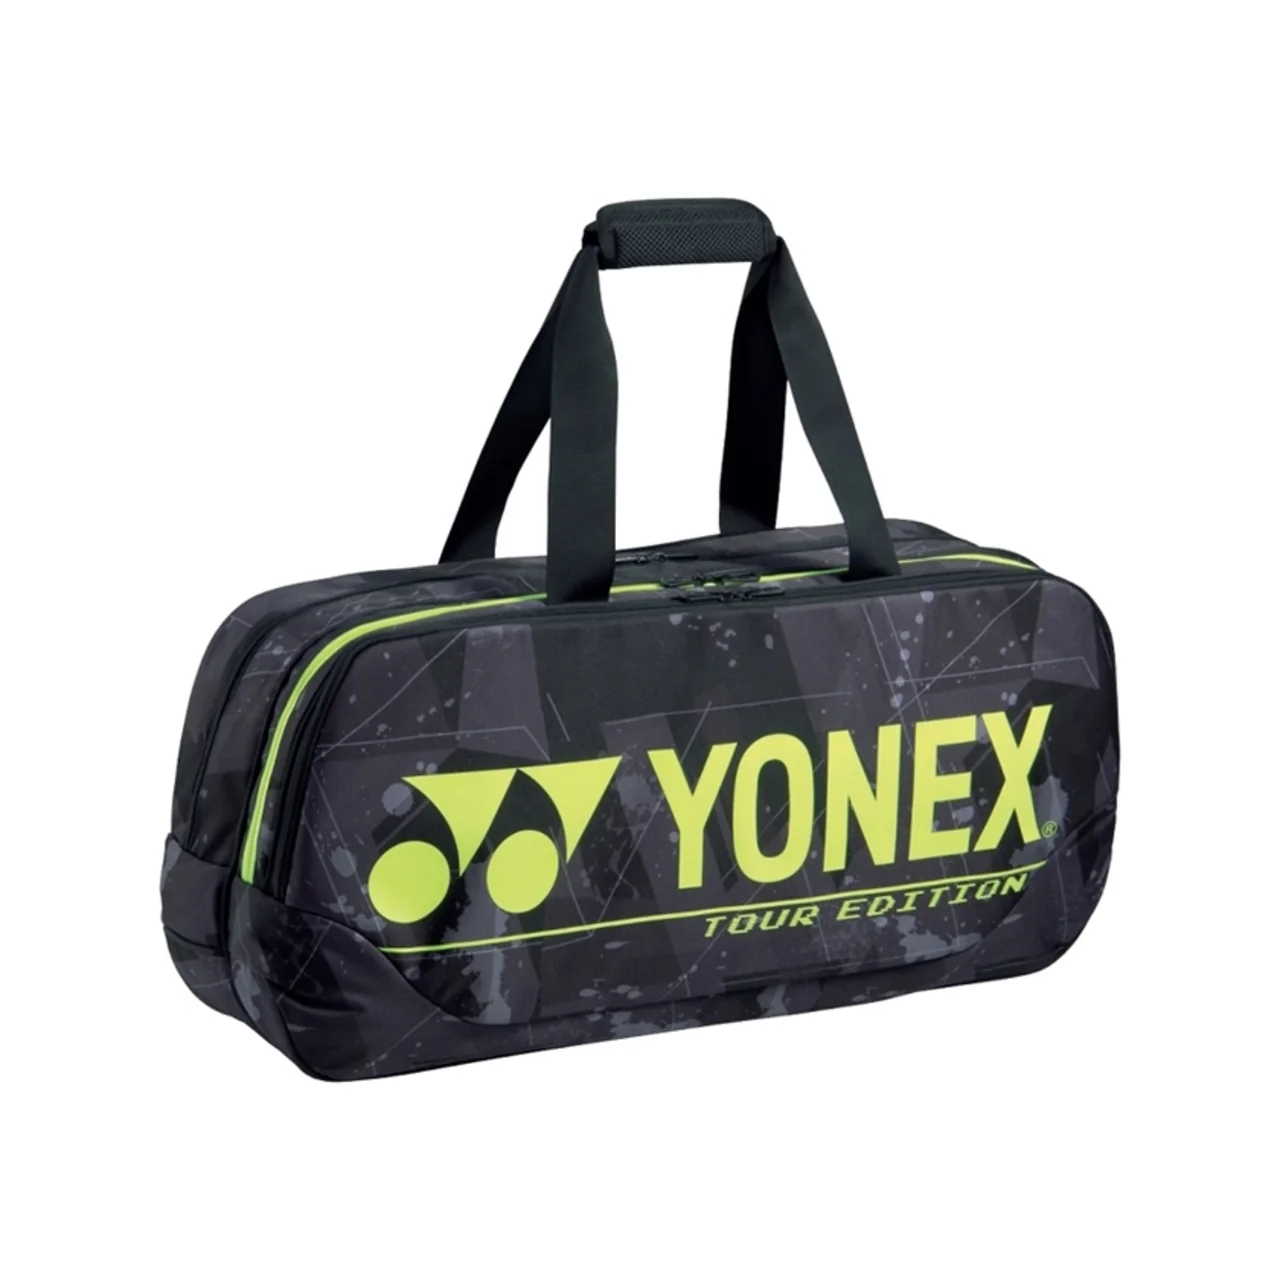 Yonex Pro Tournament Bag Black/Yellow 2021